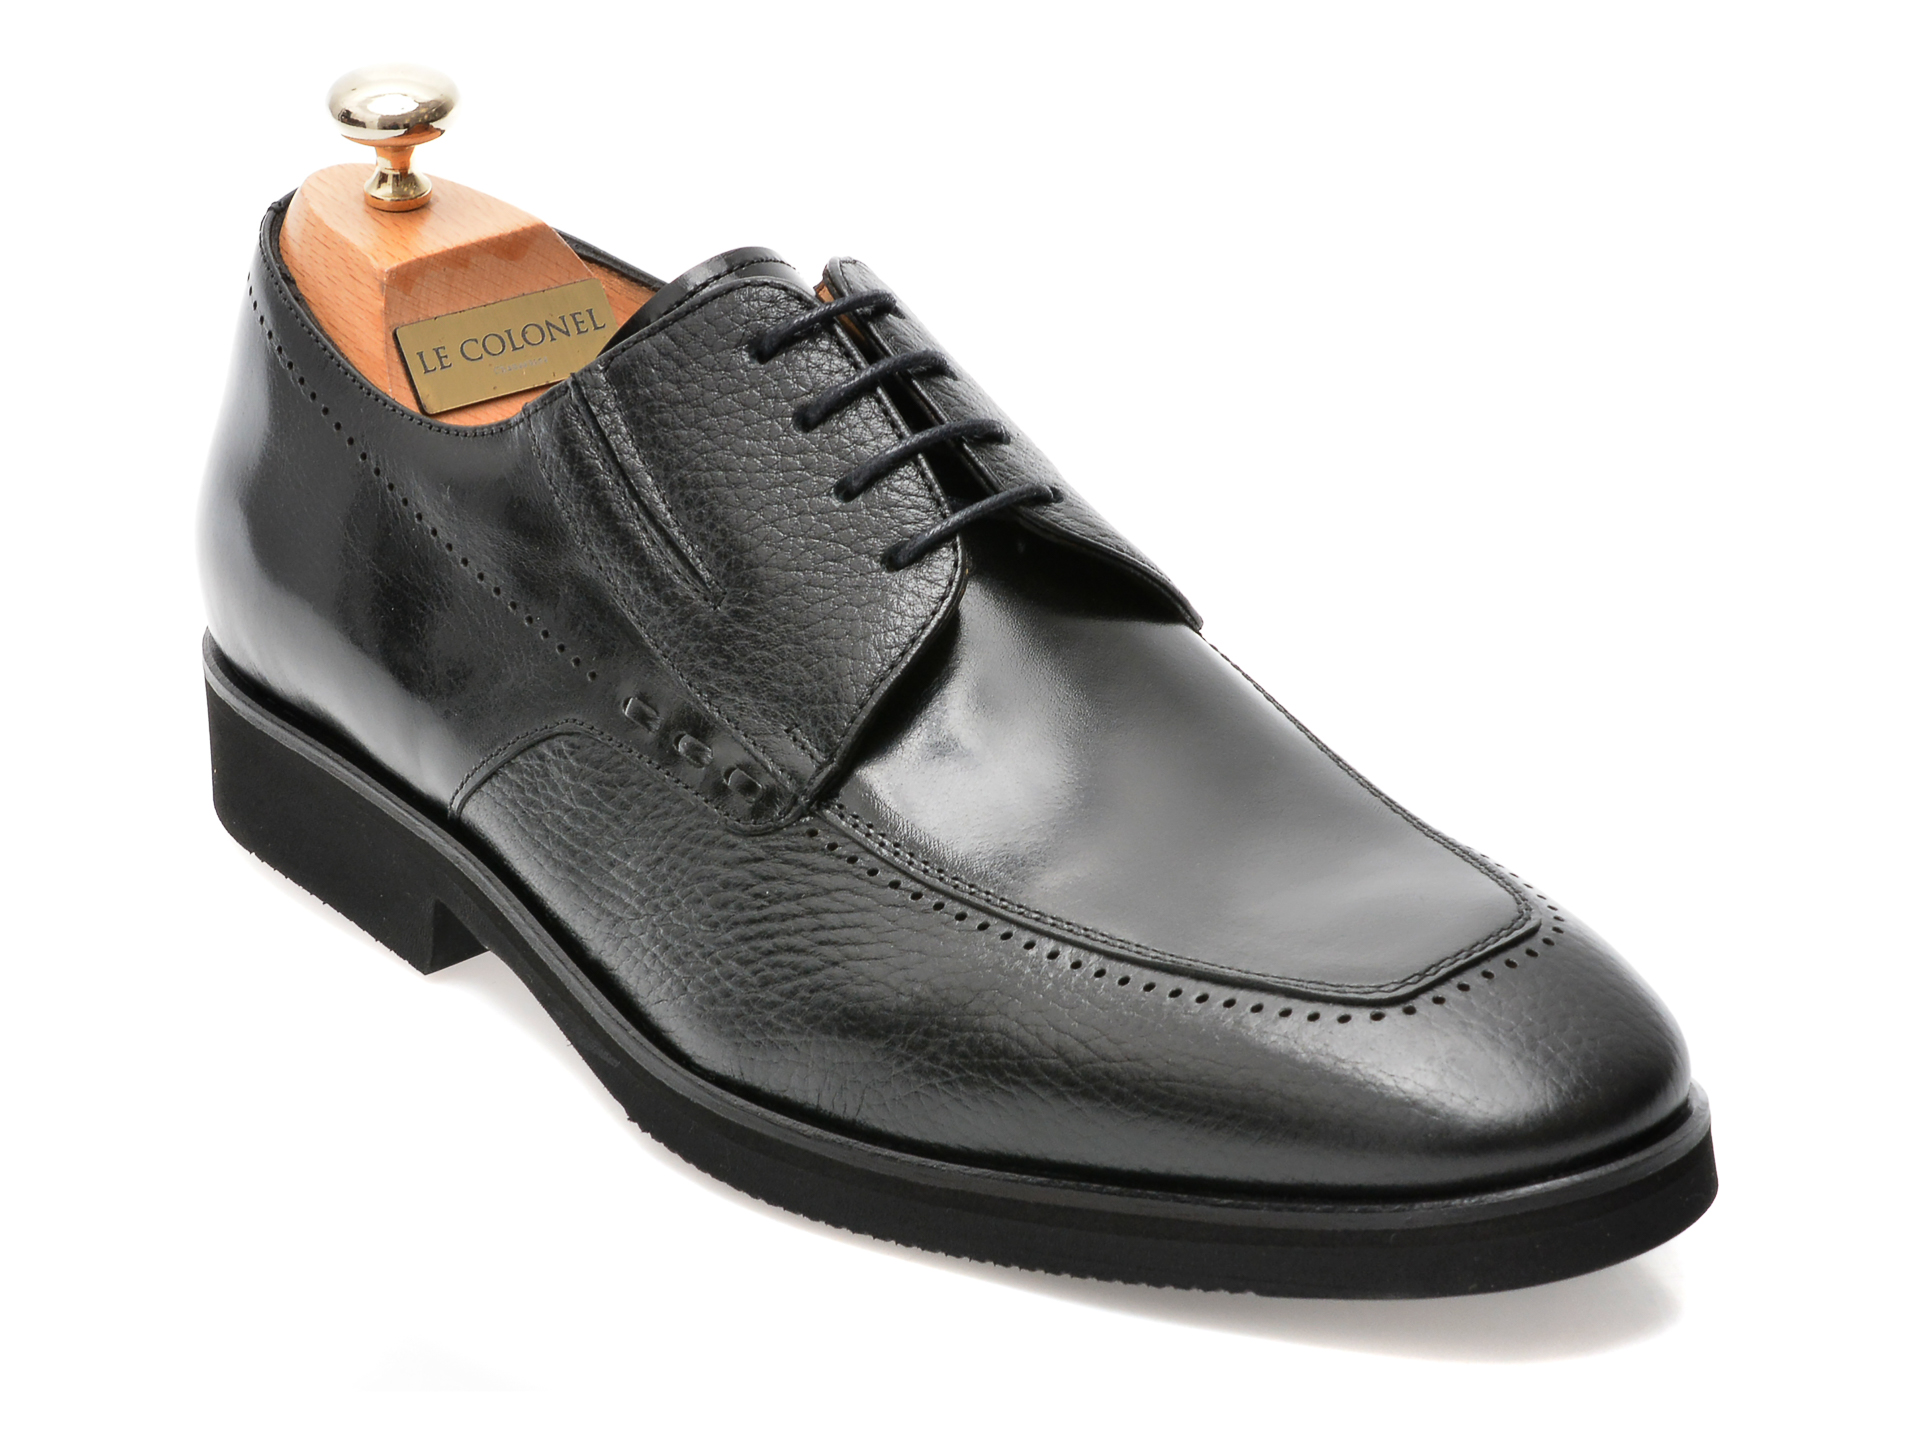 Pantofi LE COLONEL negri, 48701, din piele naturala barbati 2023-03-21